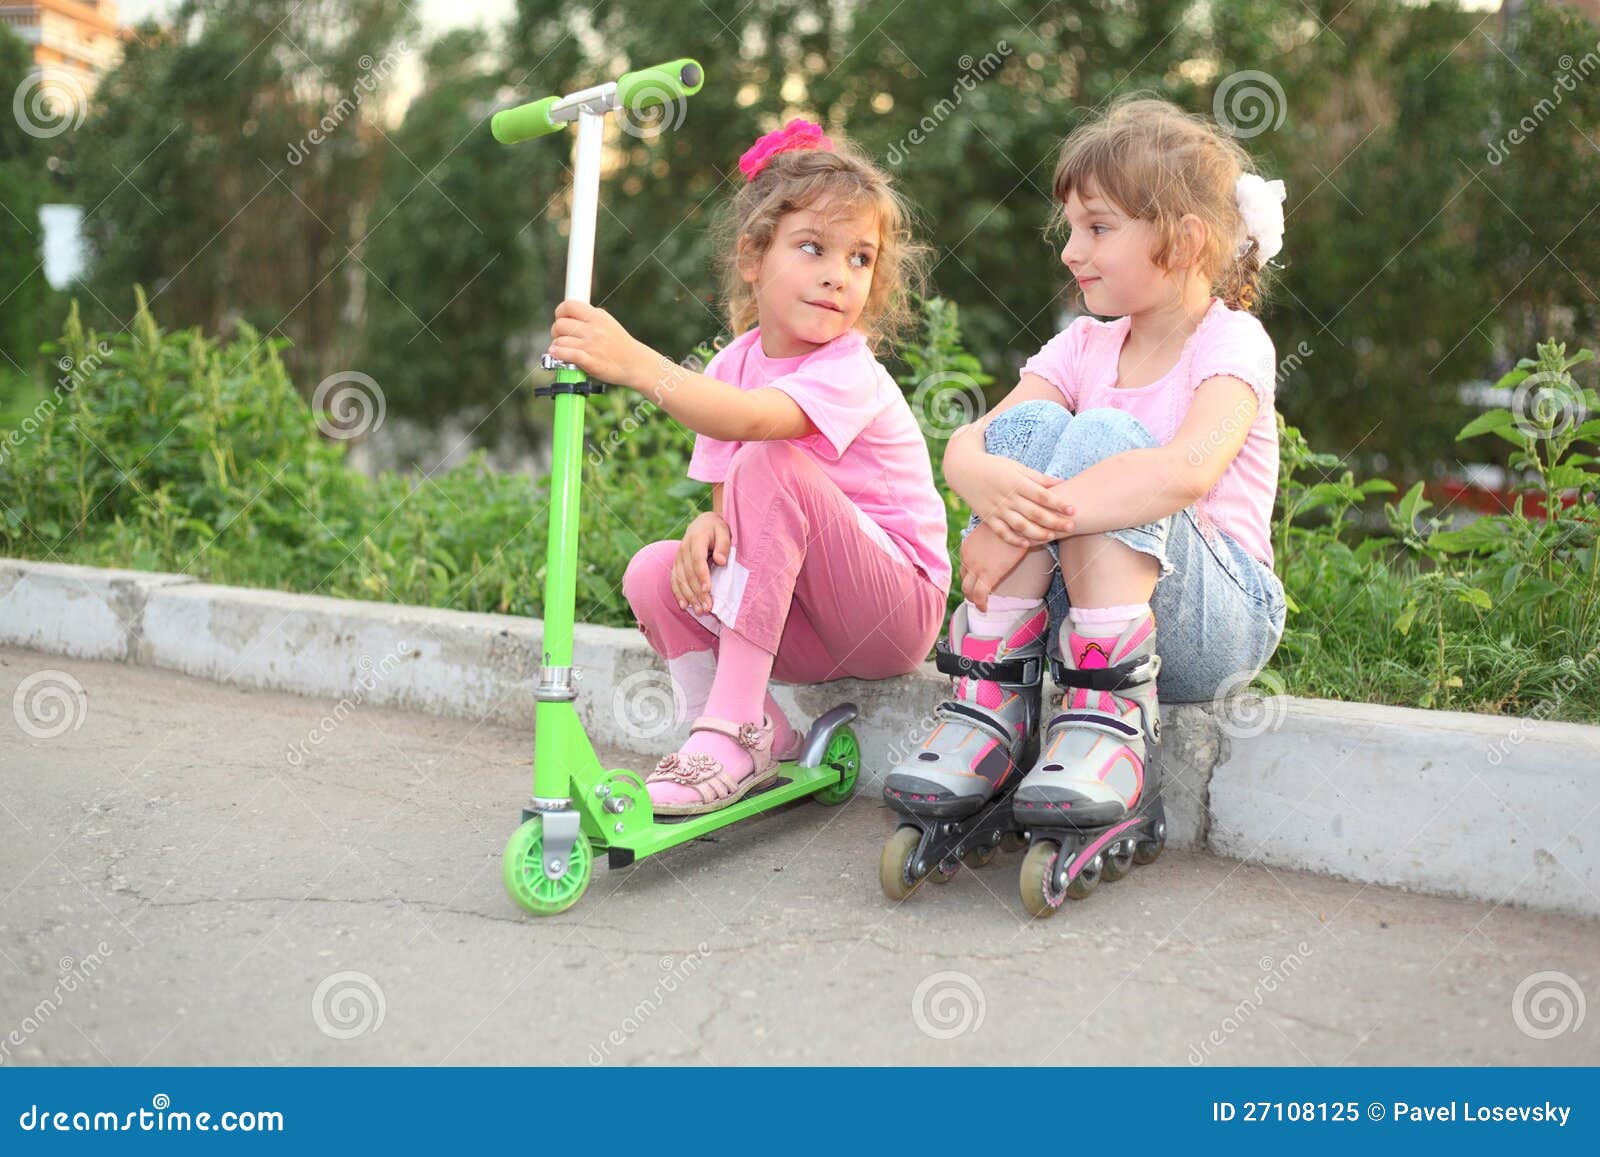 little girls scooter